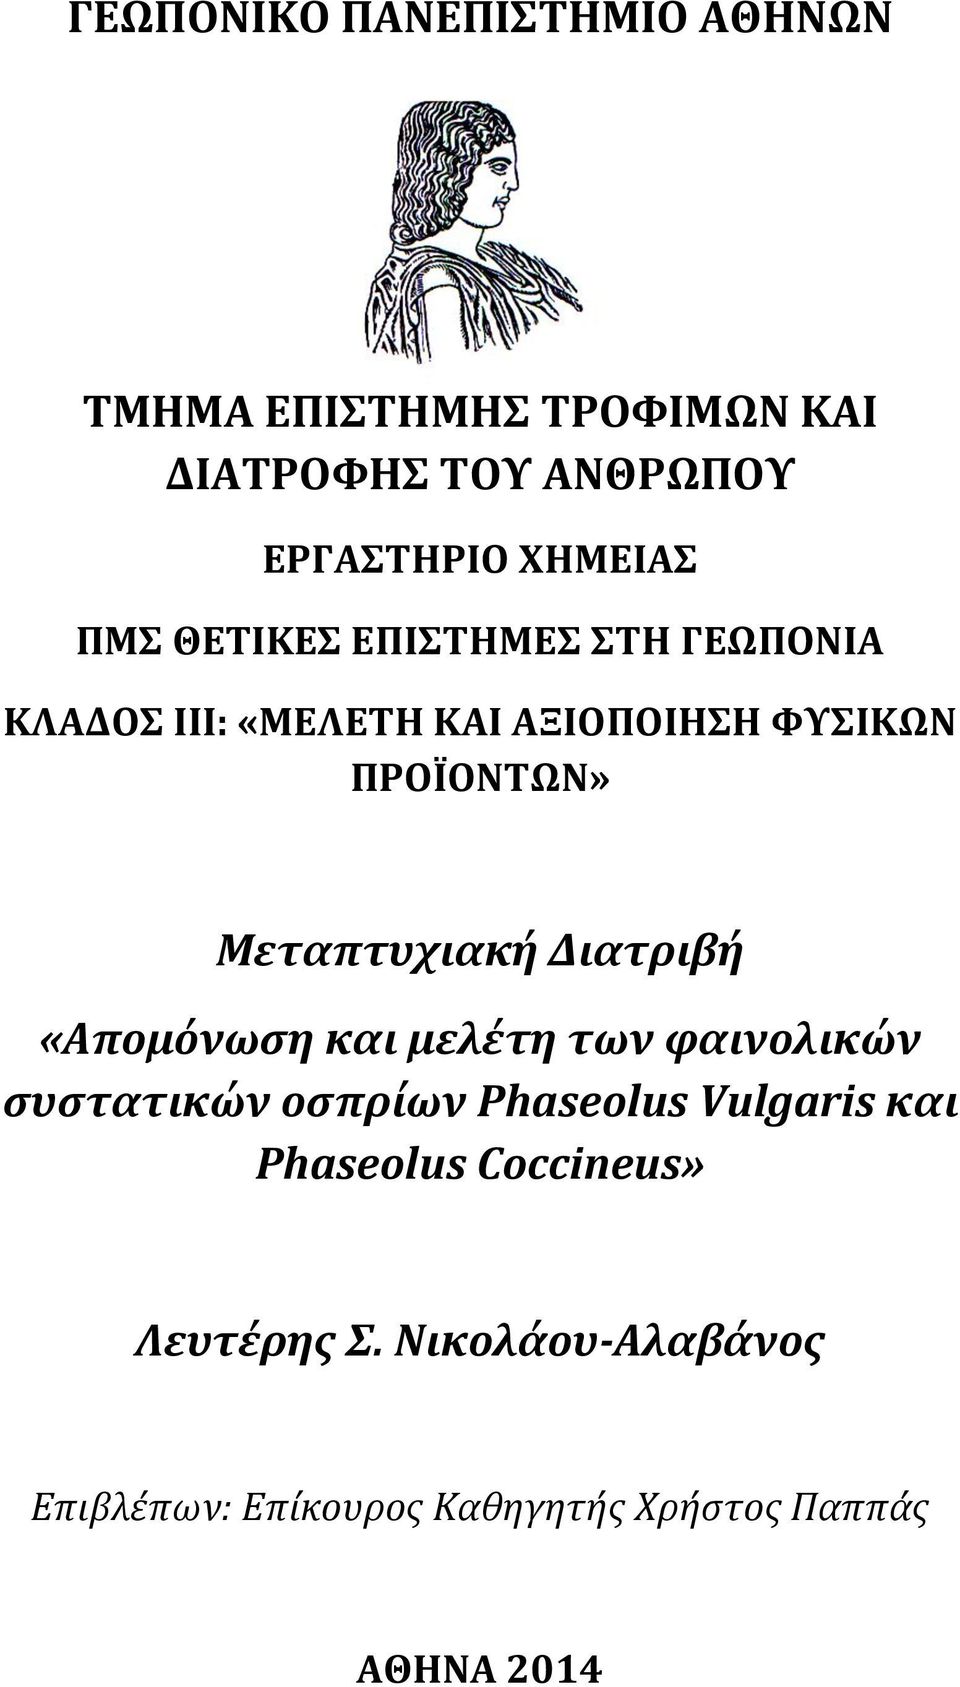 Μεταπτυχιακή Διατριβή «Απομόνωση και μελέτη των φαινολικών συστατικών οσπρίων Phaseolus Vulgaris